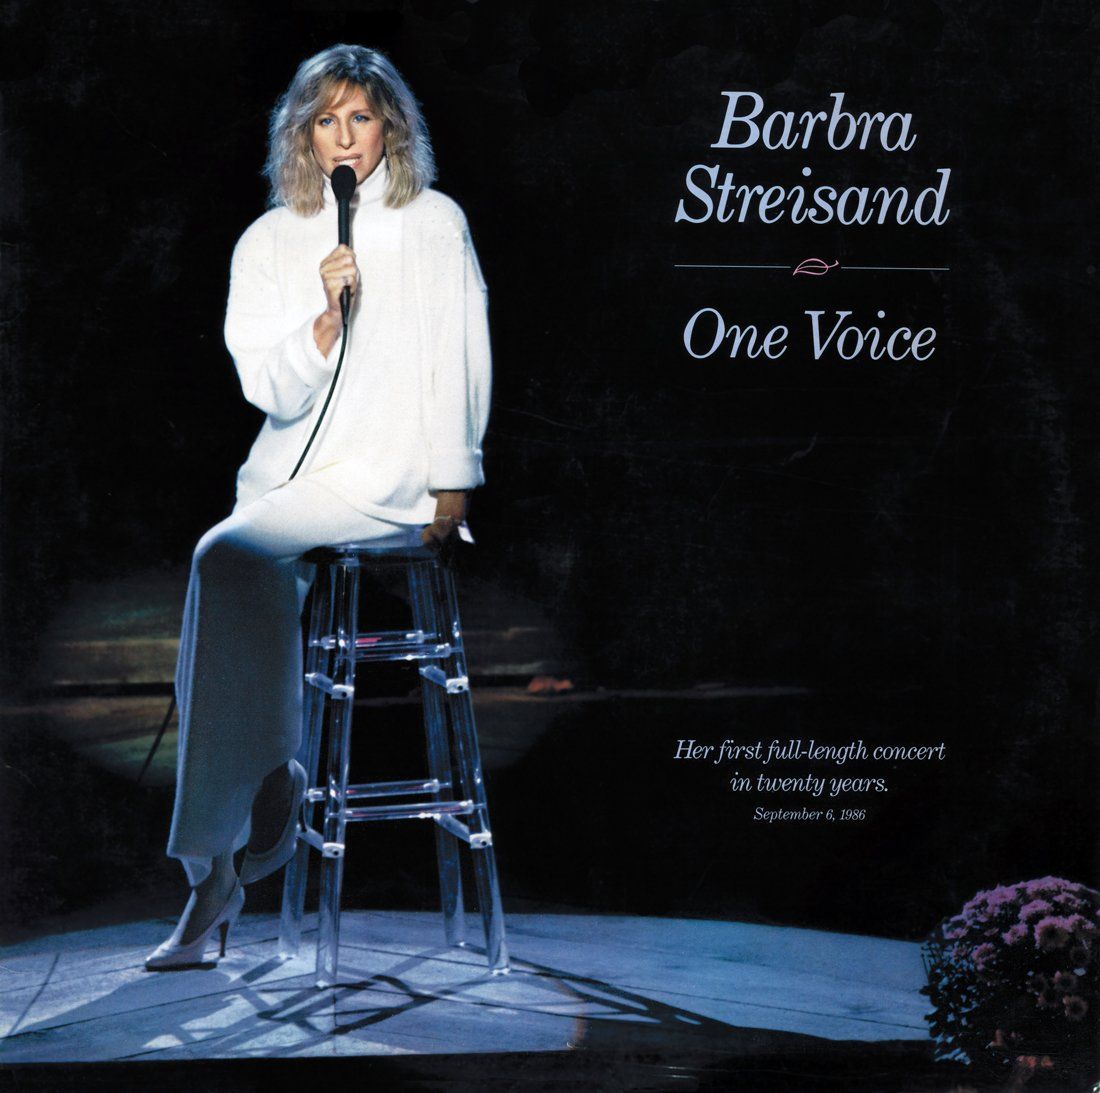 One Voice original album cover.